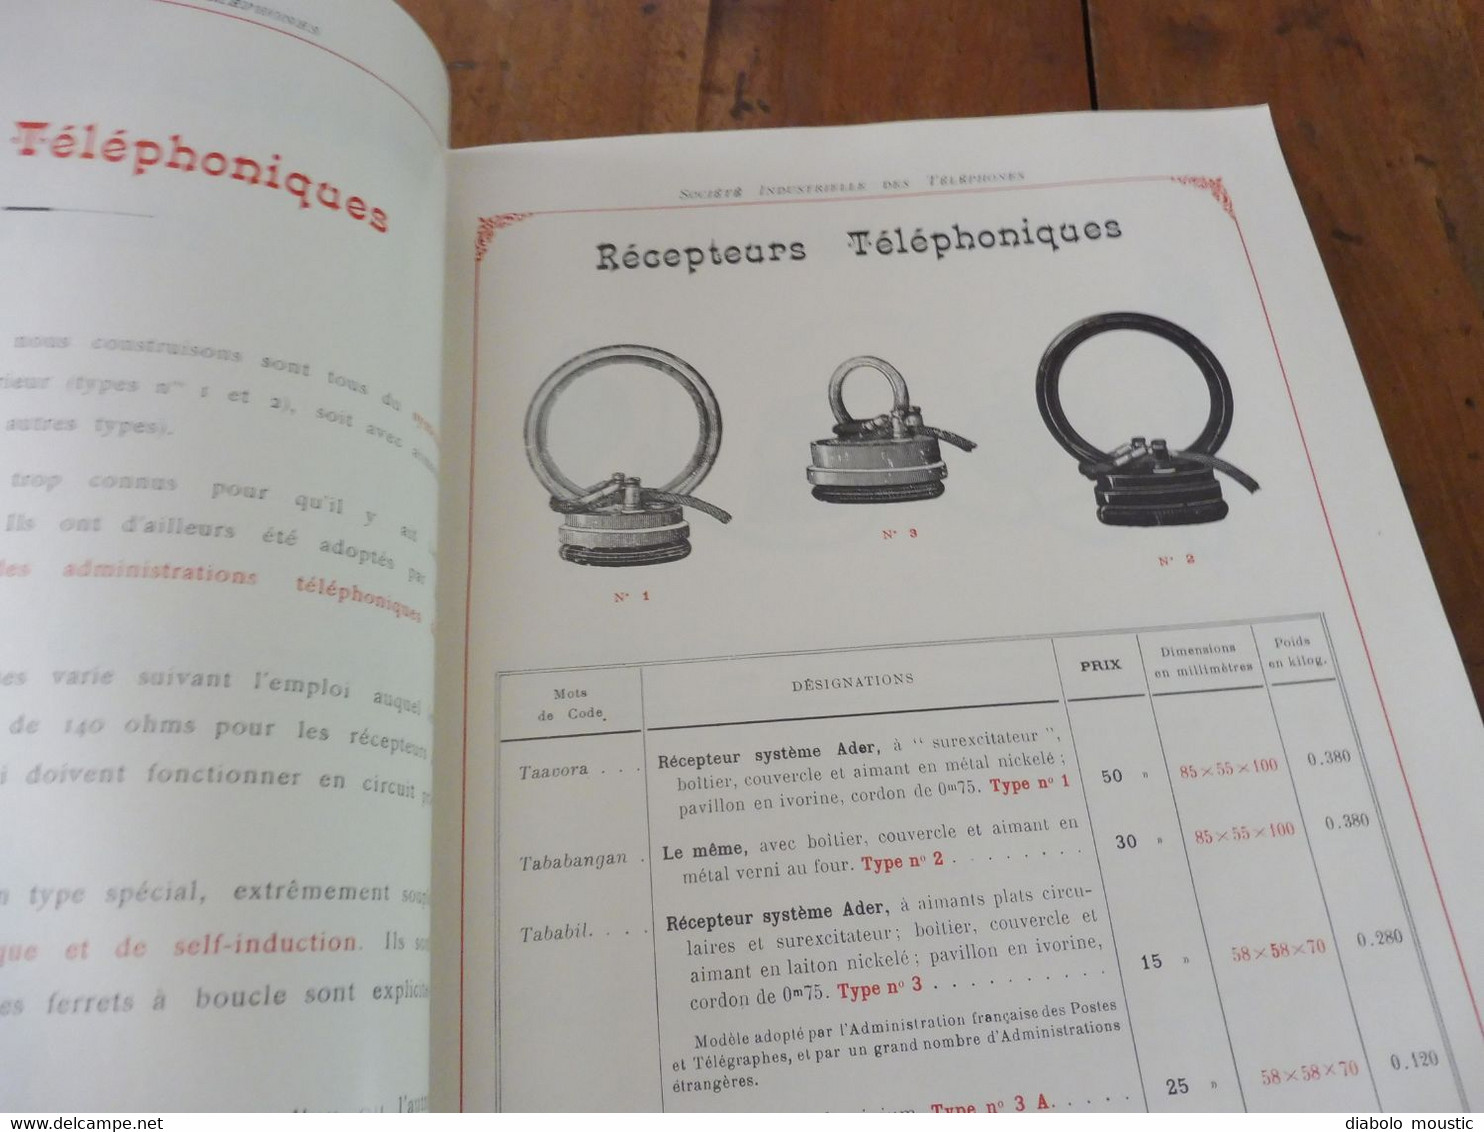 1909  Catalogue Ancien CATALOGUE GÉNÉRAL De TÉLÉPHONIE (Société Industrielle Des Téléphones) - Telefonía